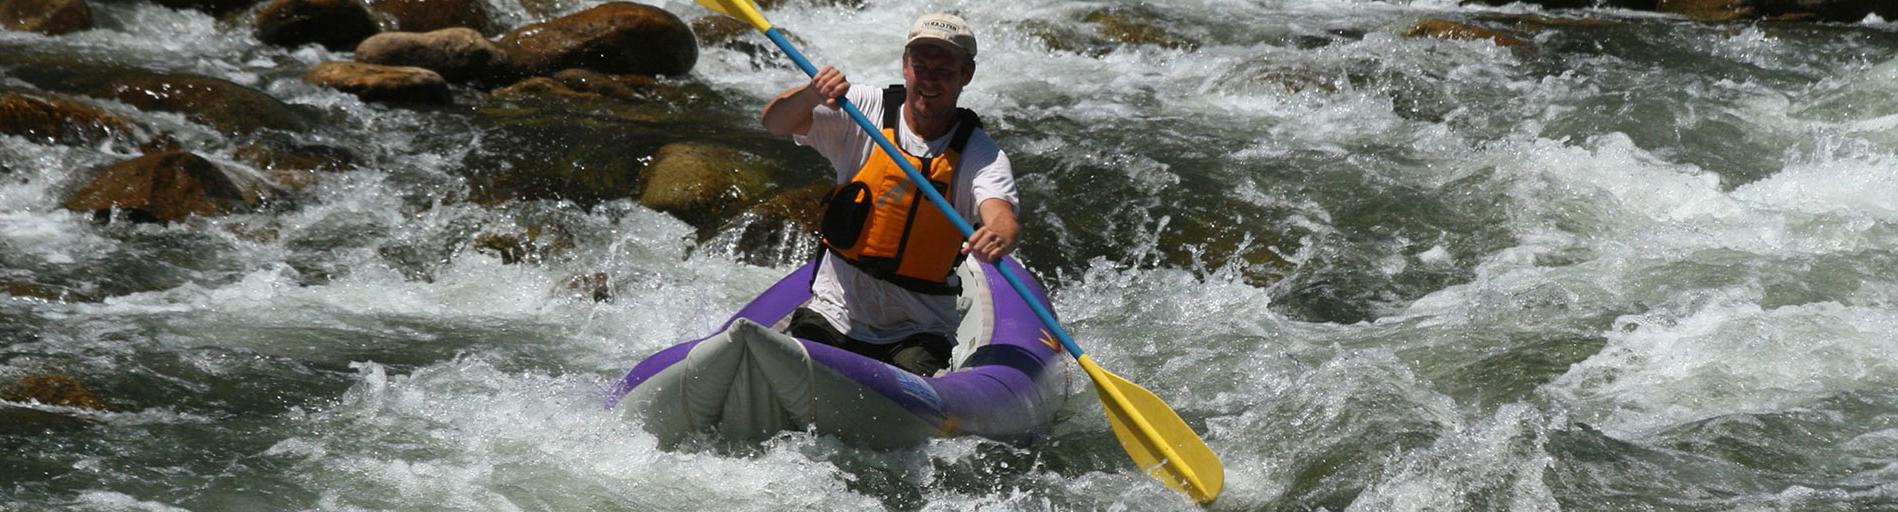 Kayaking on the Kern River